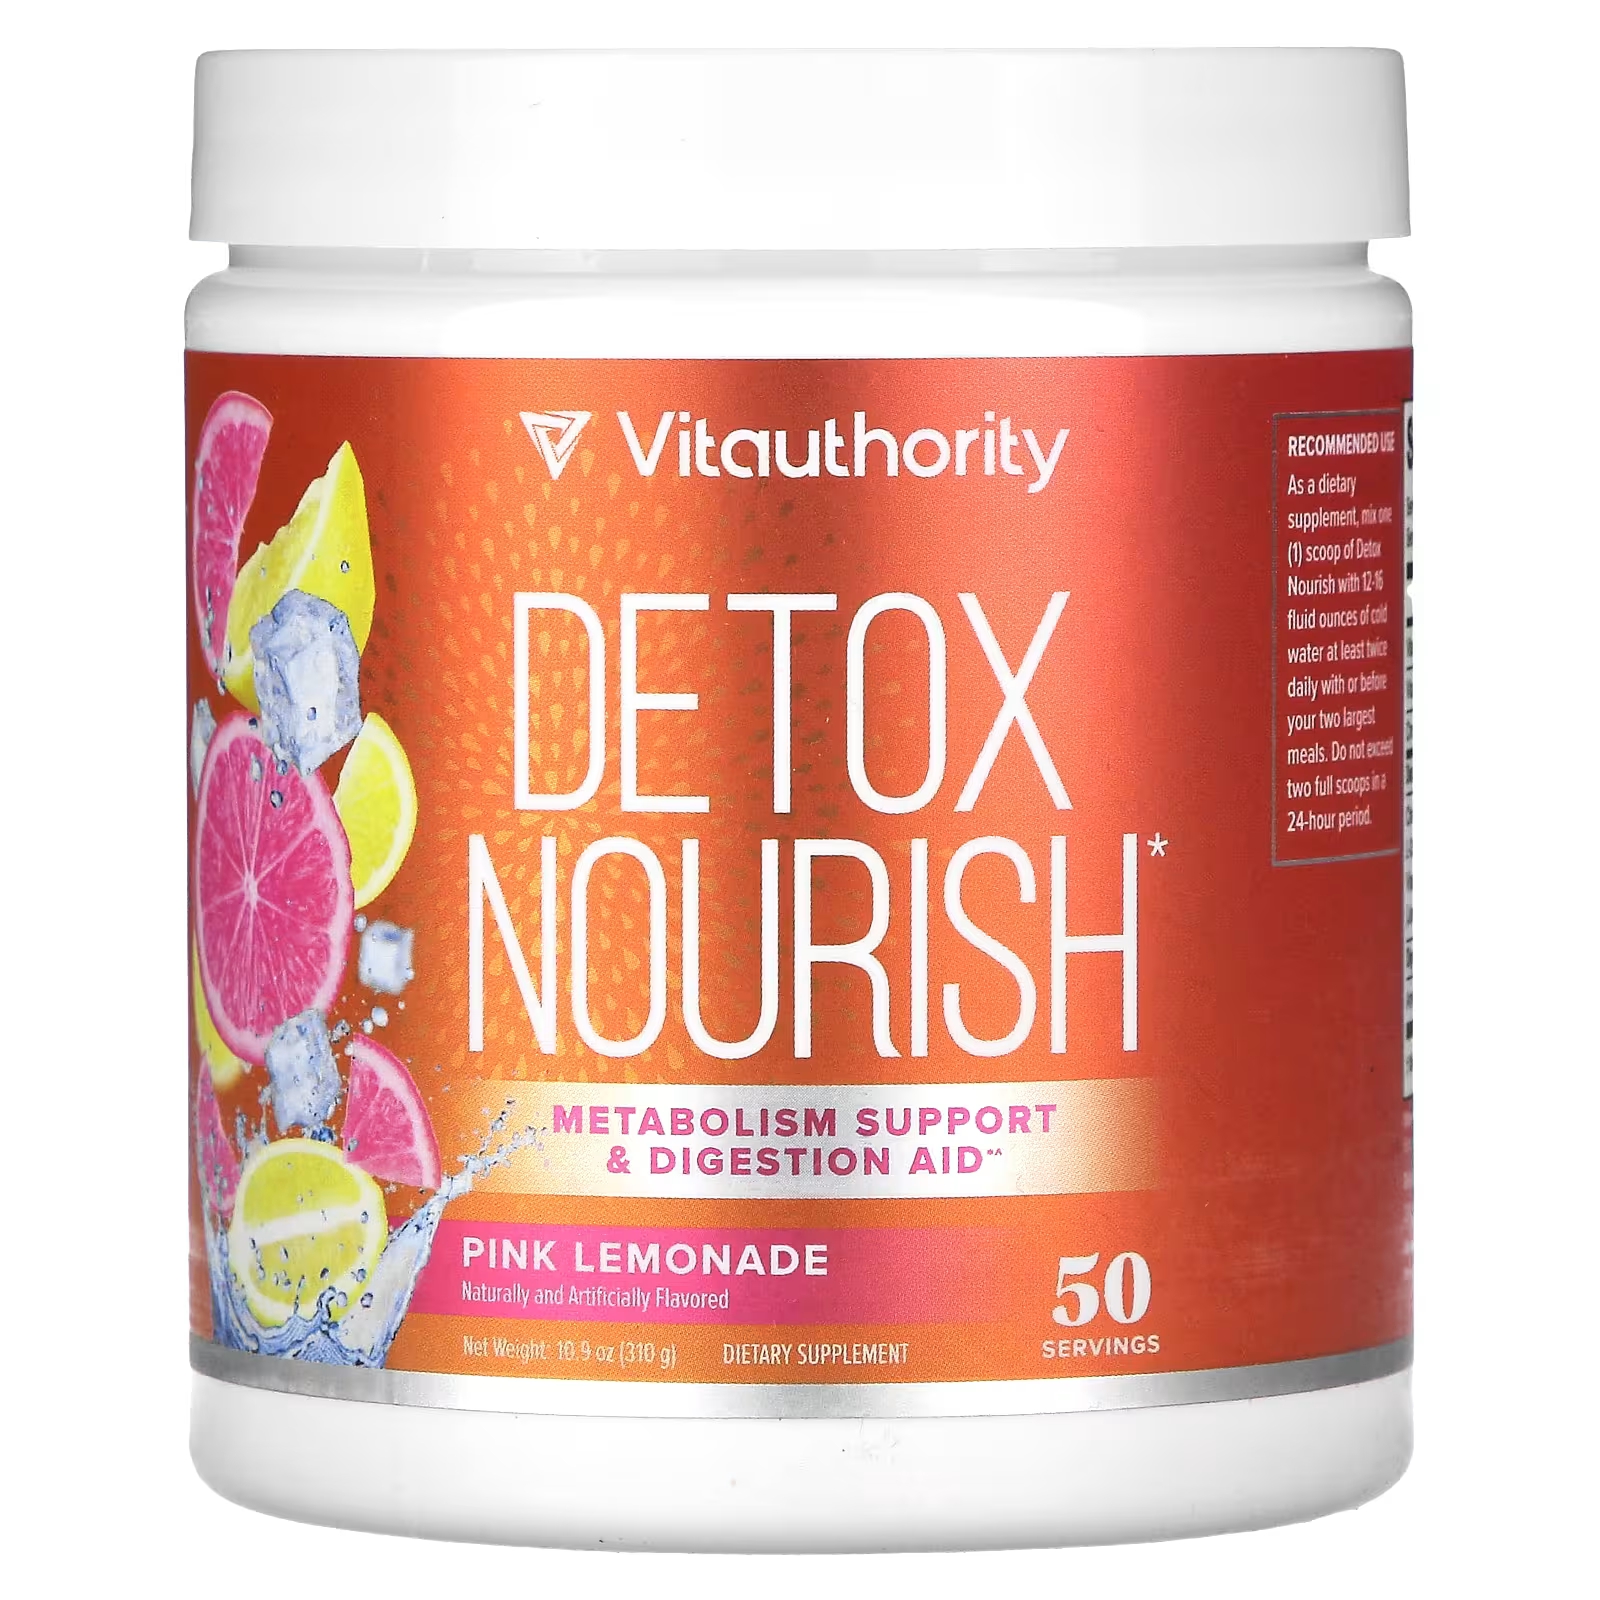 Пищевая добавка Vitauthority Detox Nourish розовый лимонад, 310 г vitauthority detox nourish средство для снижения веса и поддержки пищеварения натуральный арбуз 310 г 10 9 унции